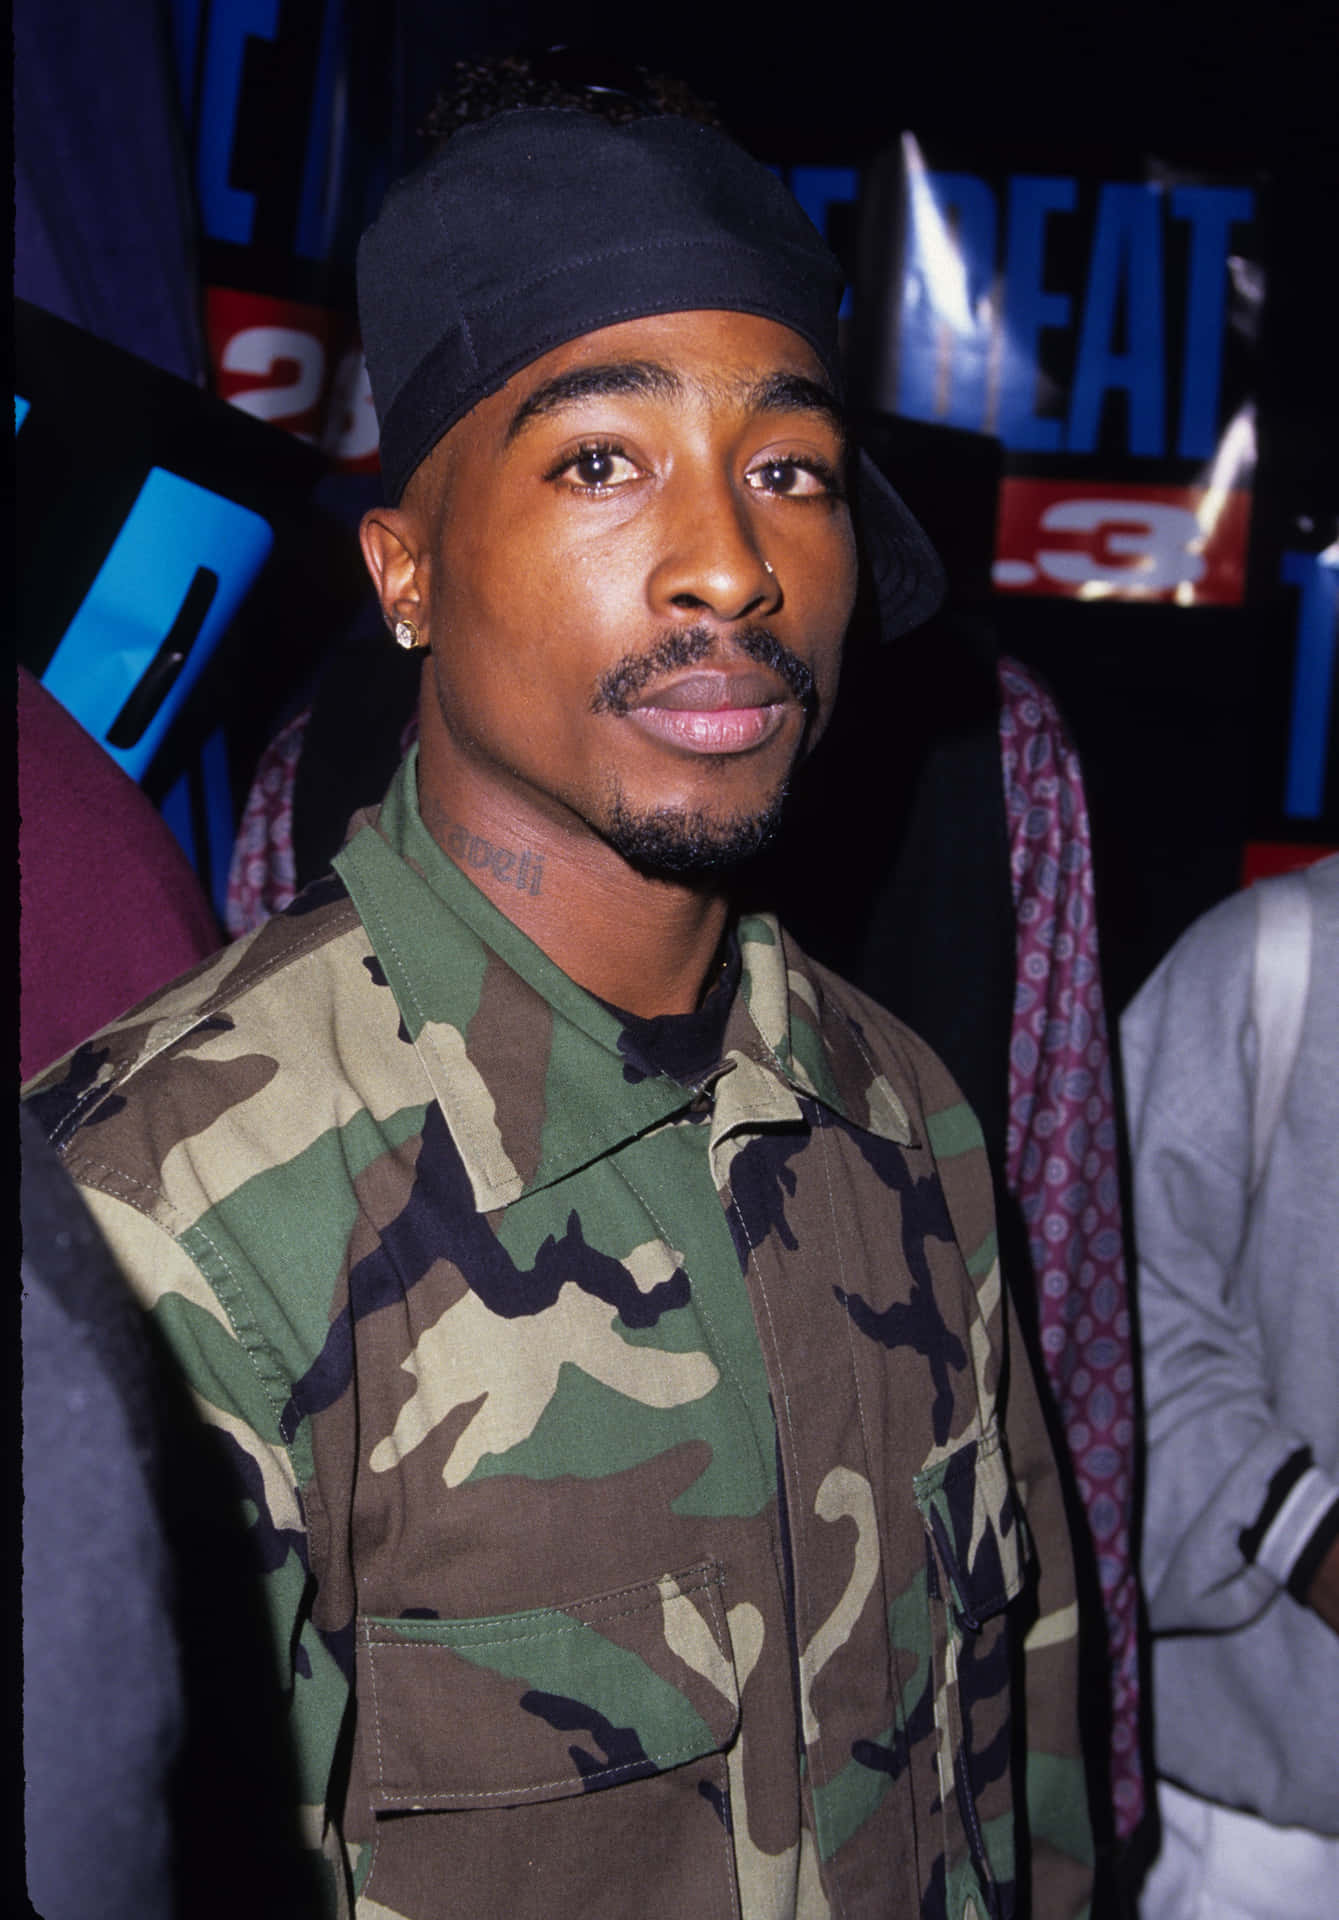 Denlegendariske Rapkunstner Tupac.